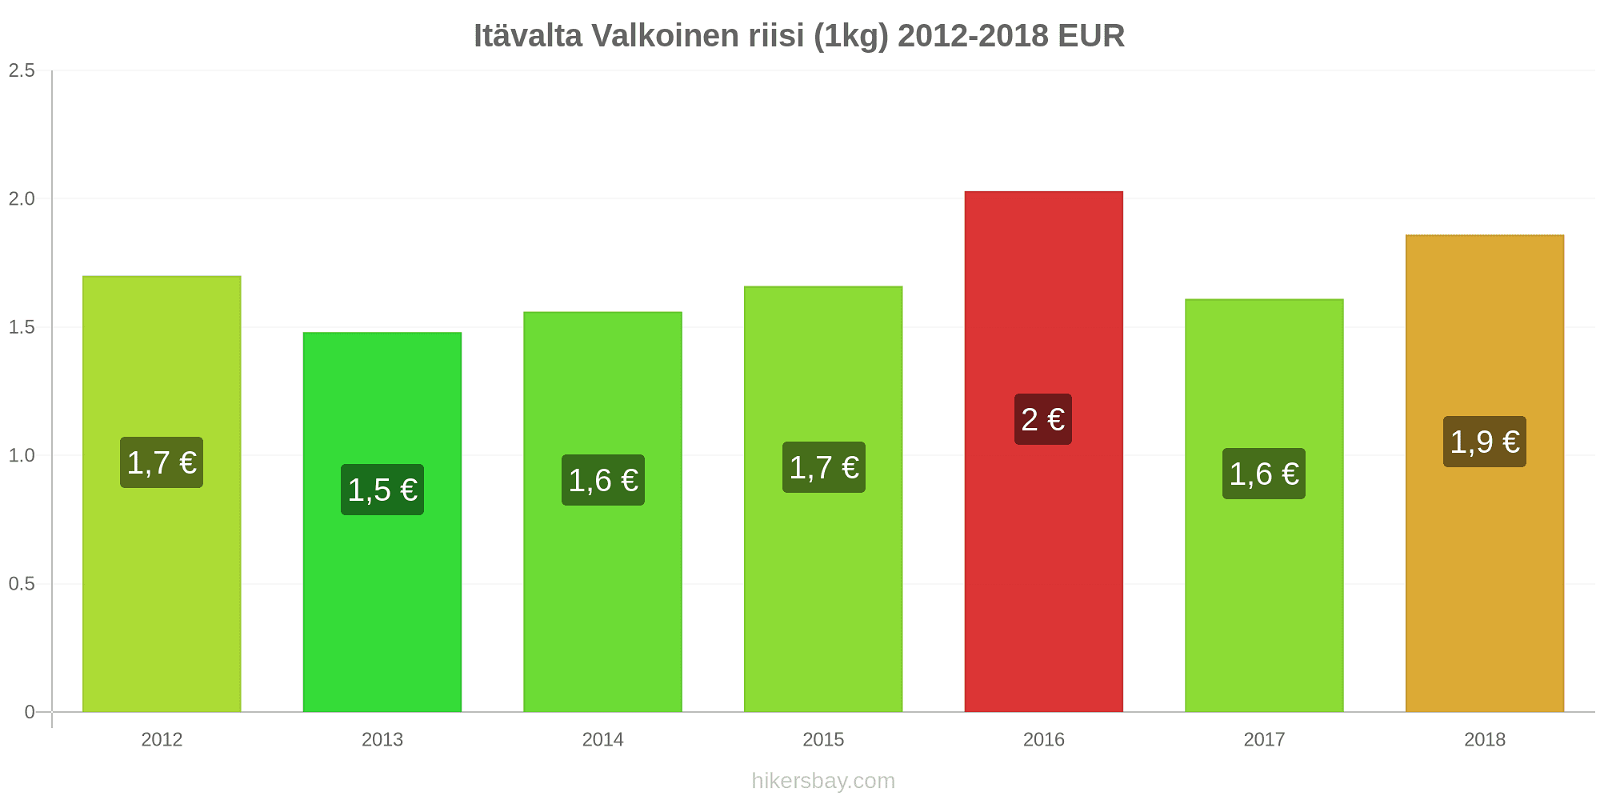 Itävalta hintojen muutokset Valkoinen riisi (1kg) hikersbay.com